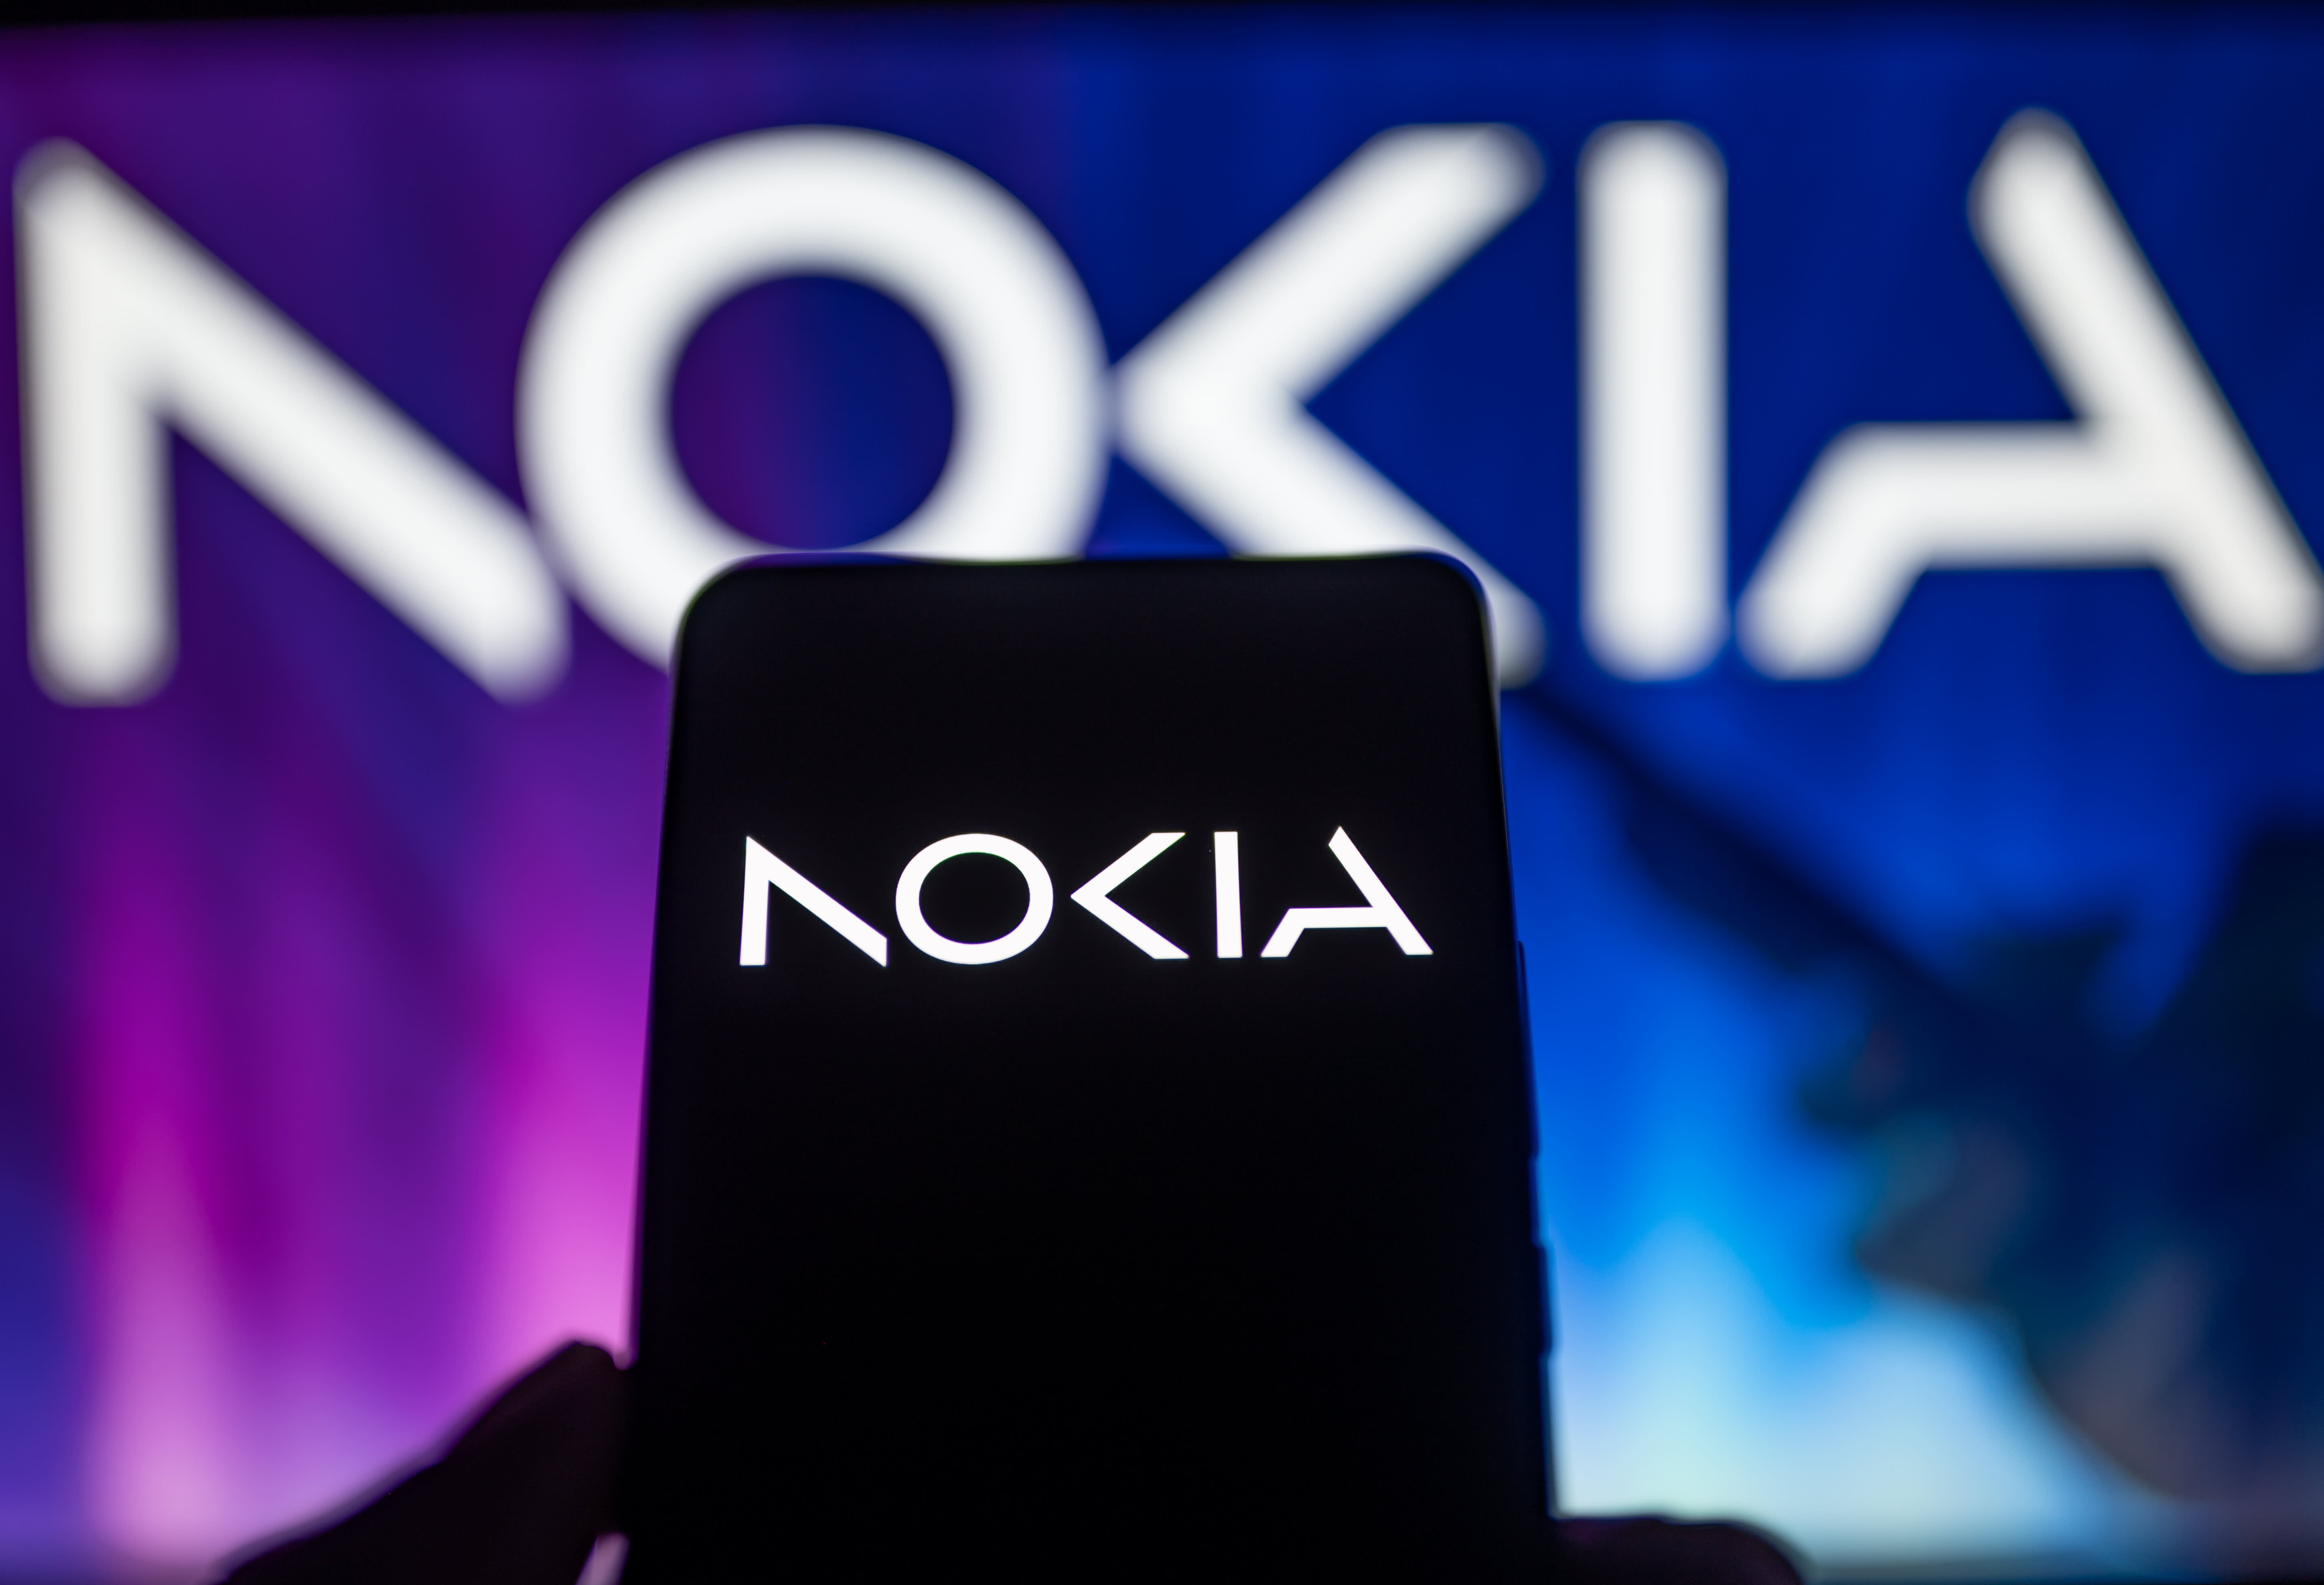 O lucro trimestral da Nokia superou as expectativas